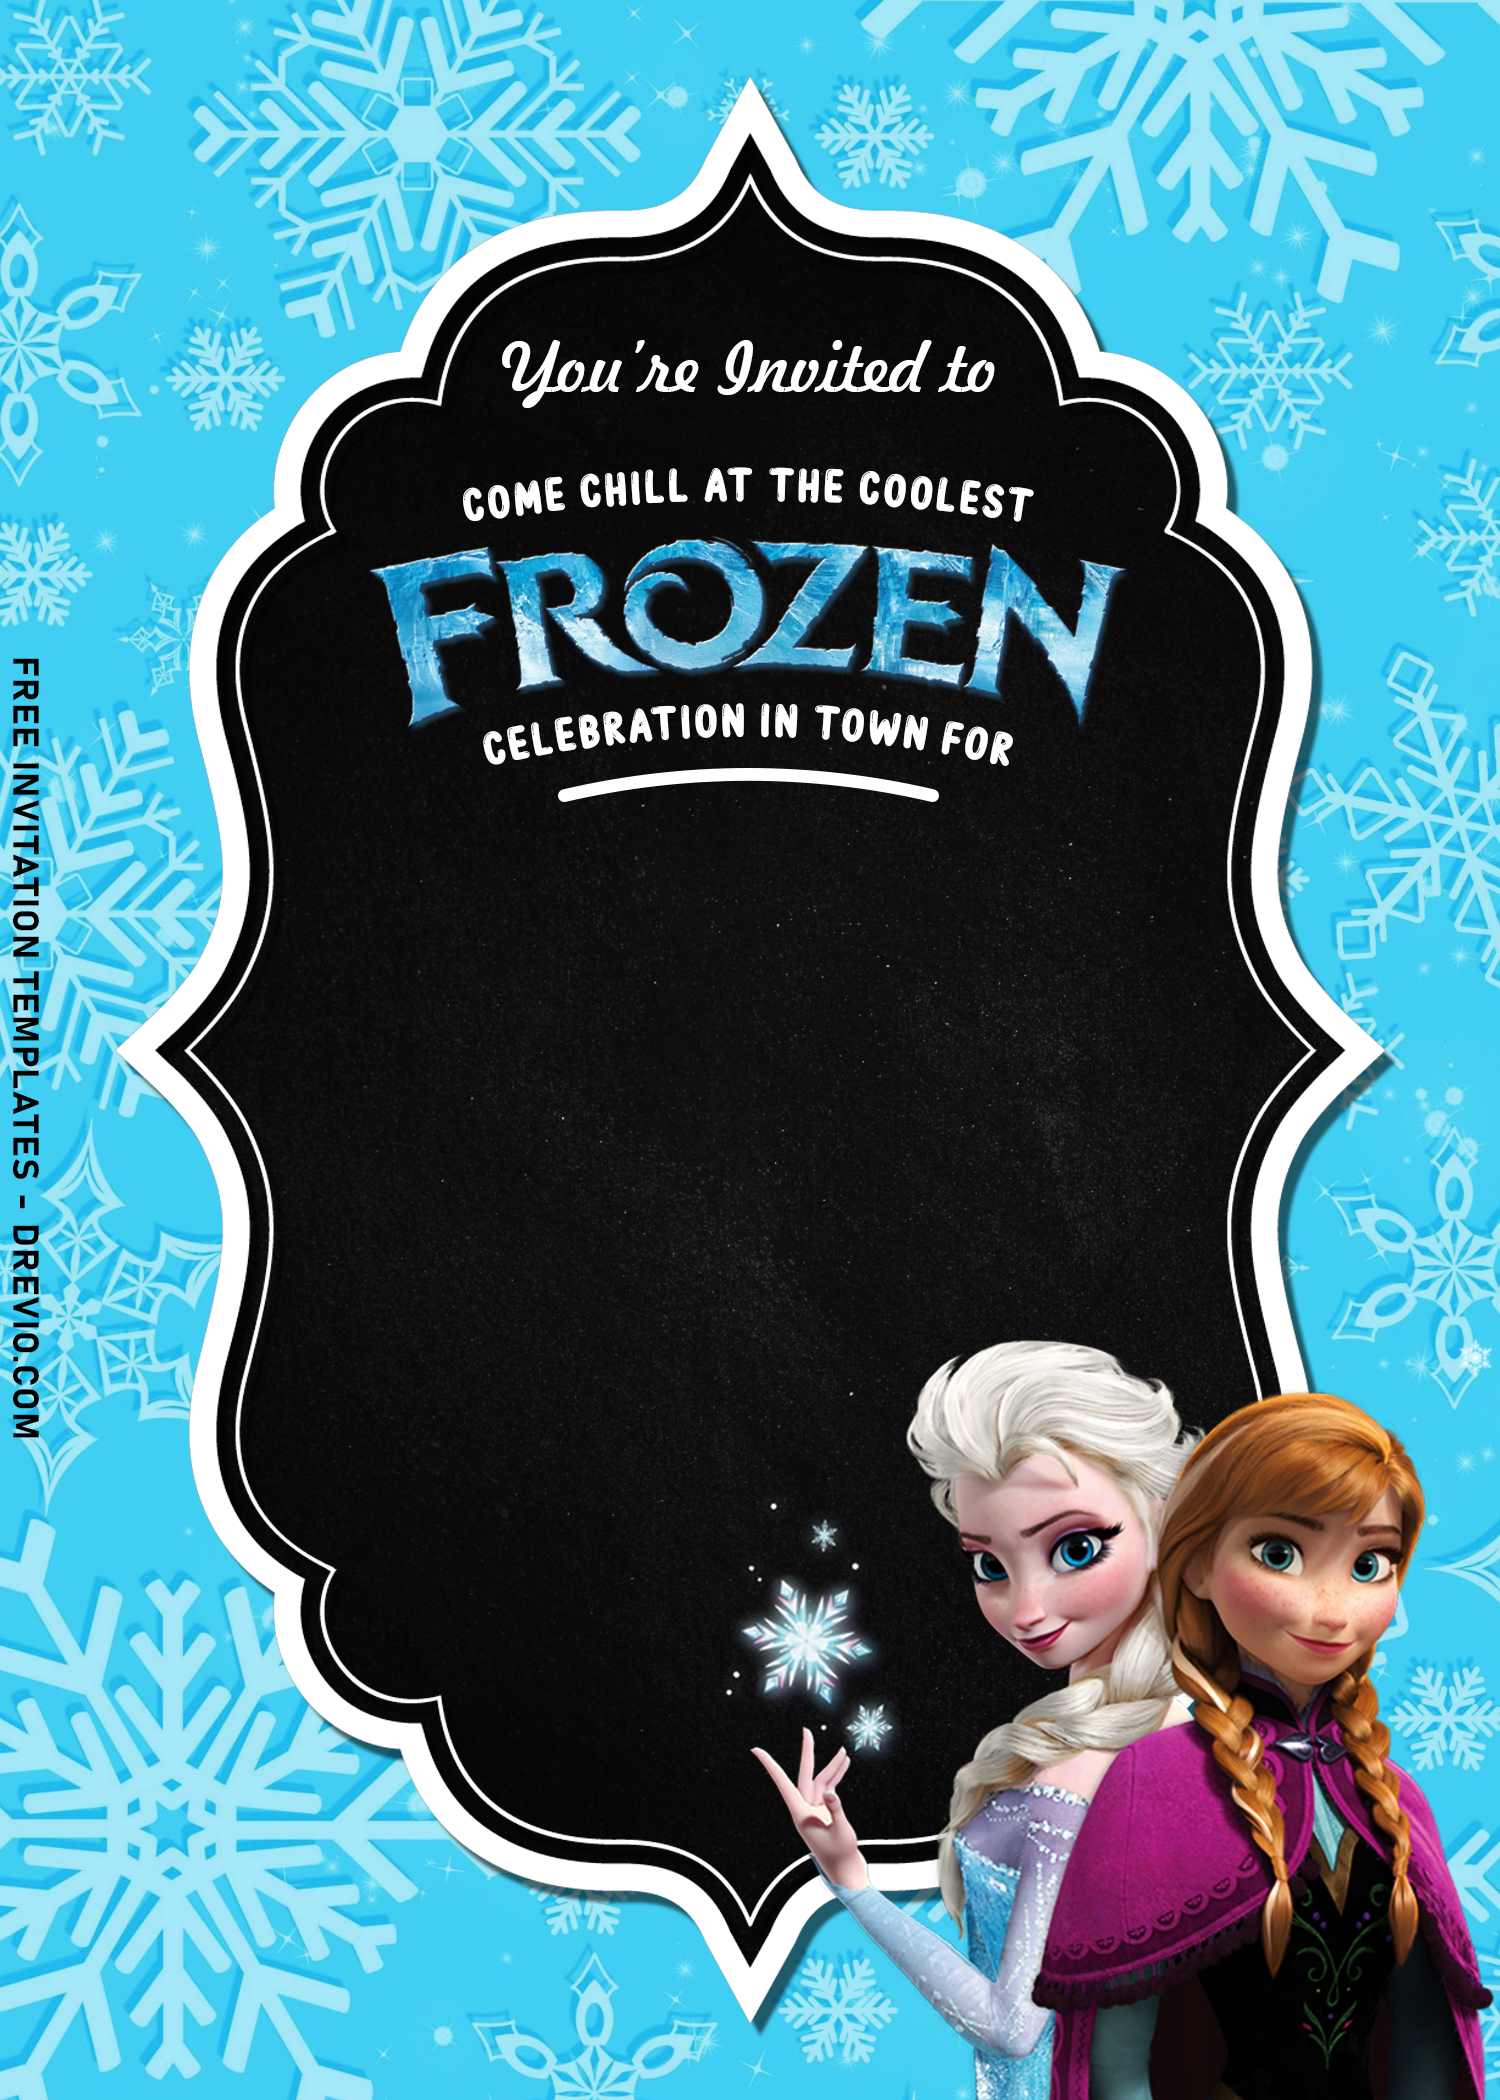 frozen invitation template